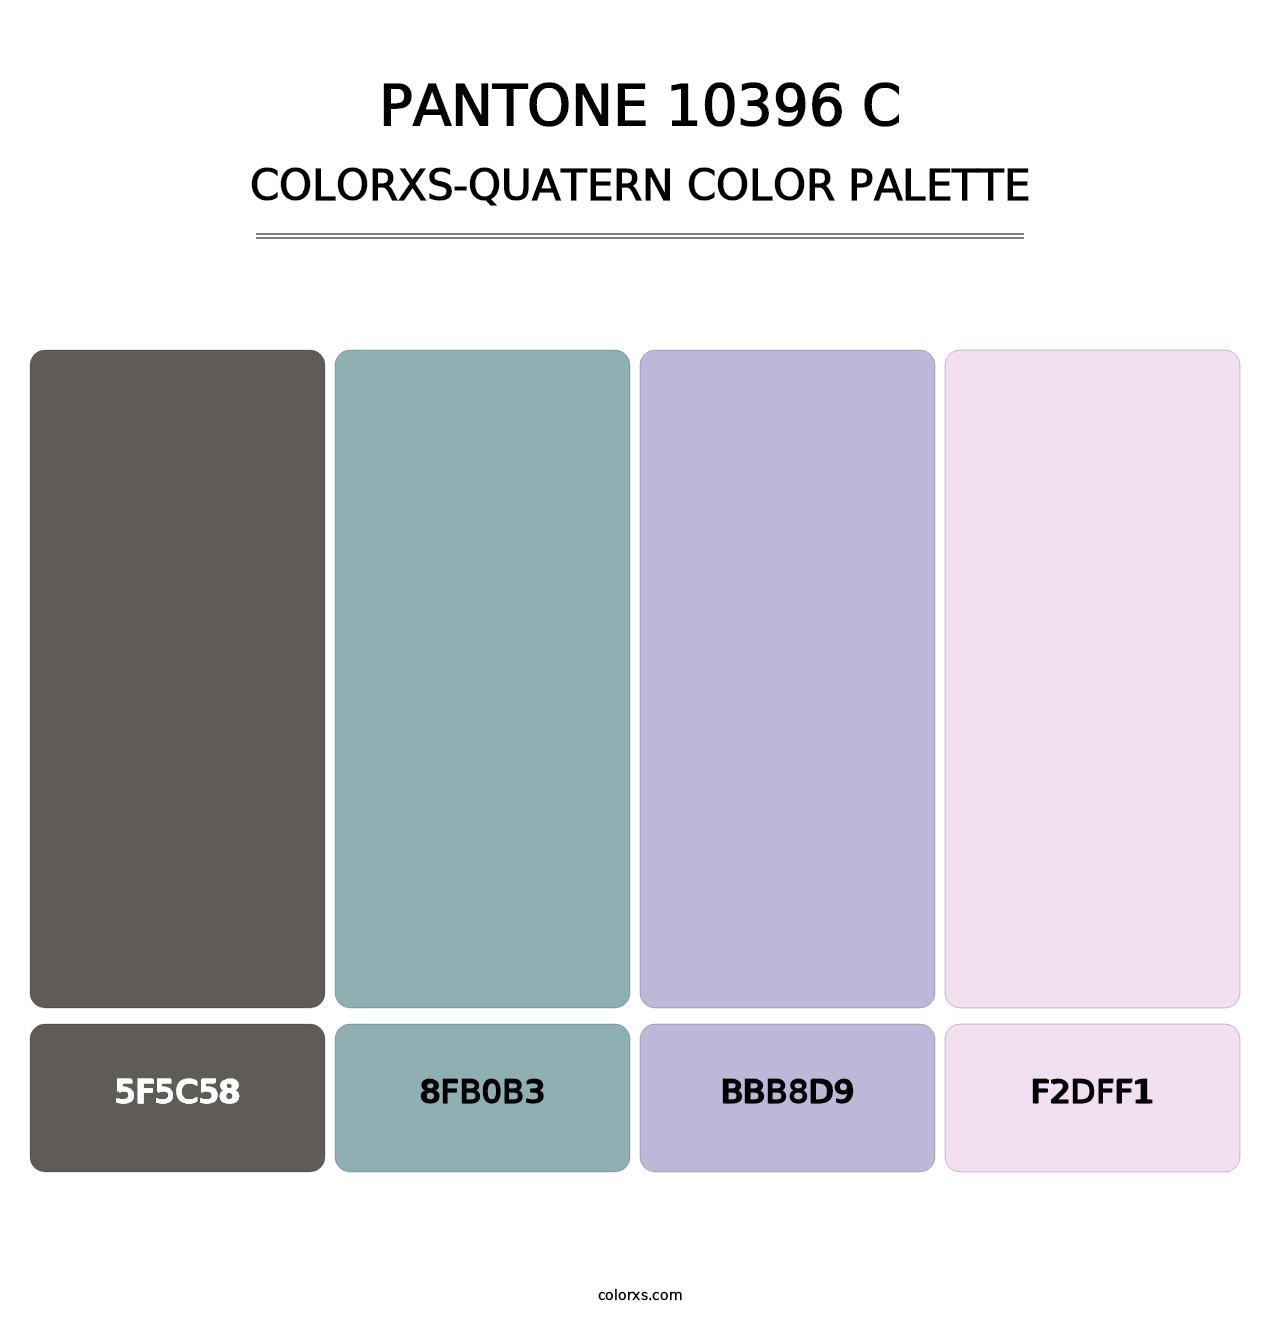 PANTONE 10396 C - Colorxs Quatern Palette